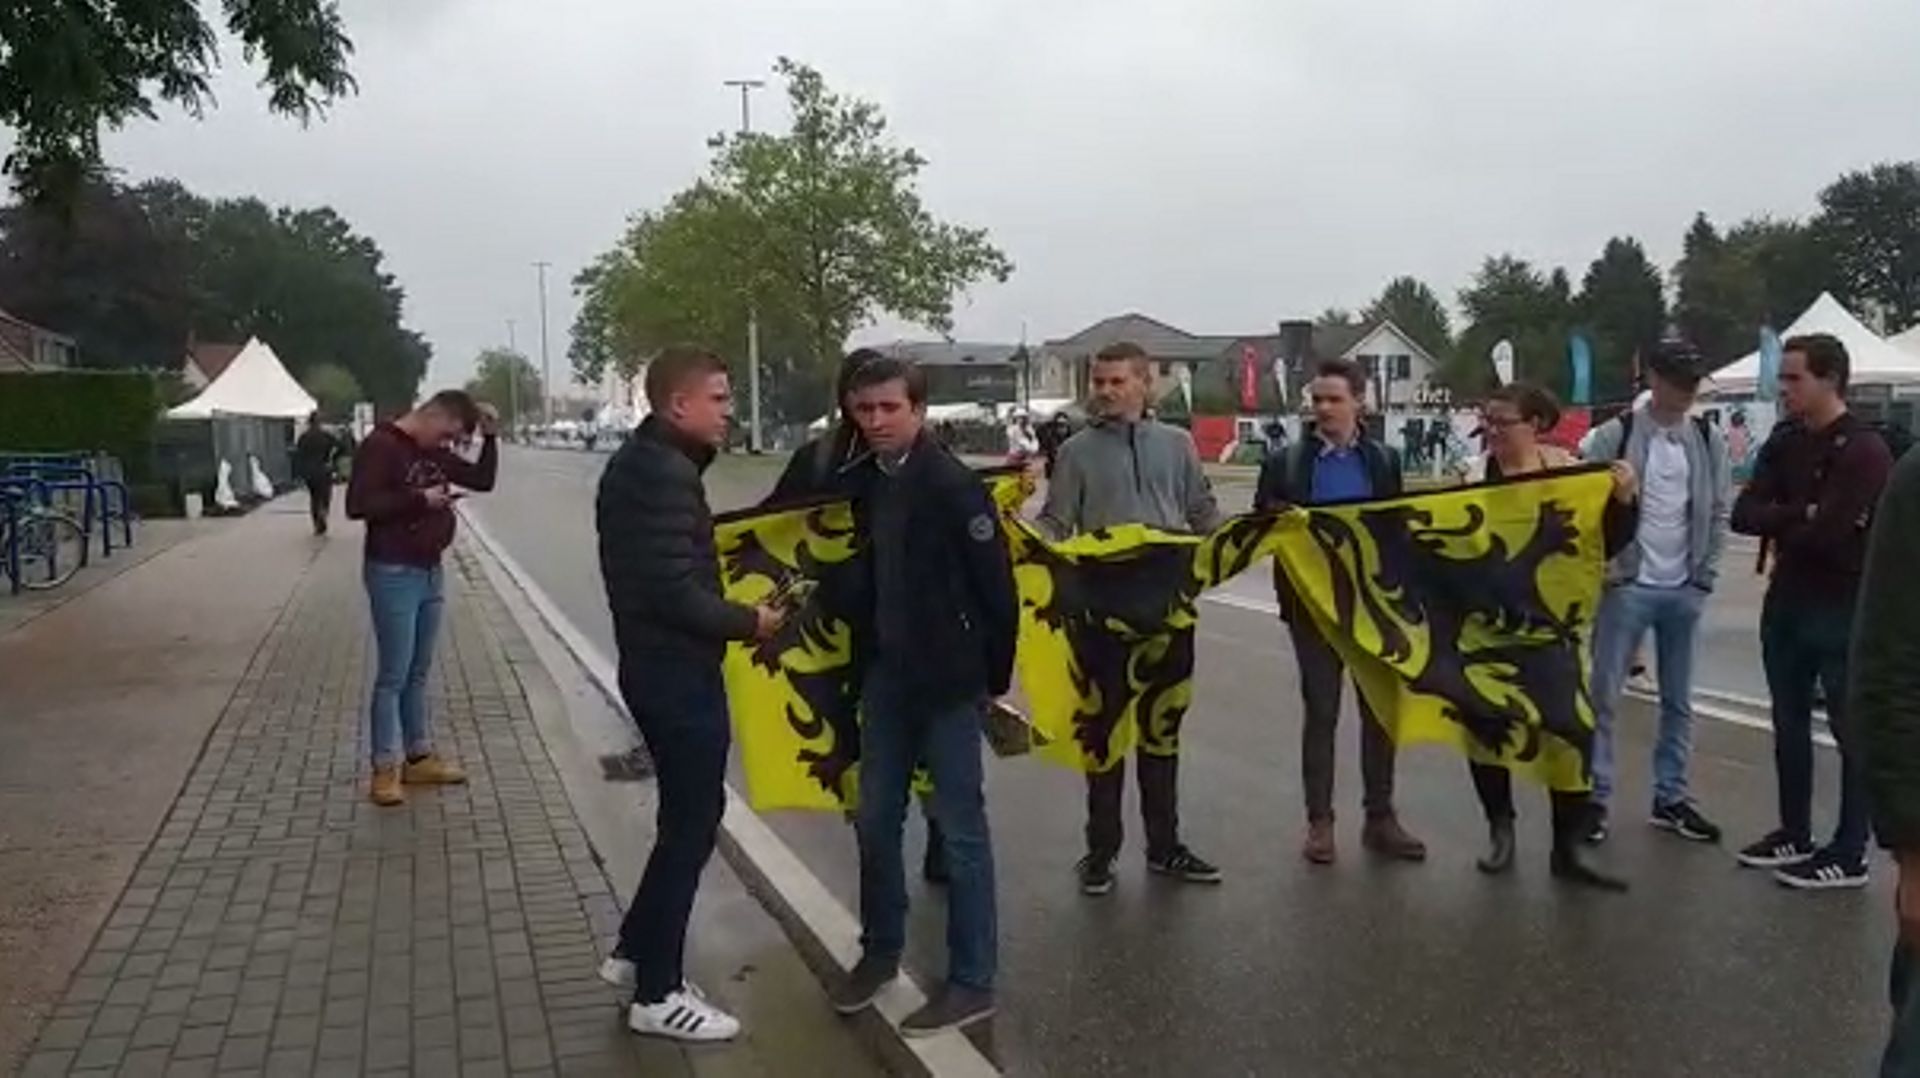 Des jeunes du Vlaams Belang distribuent des drapeaux flamingants à l'entrée du Pukkelpop